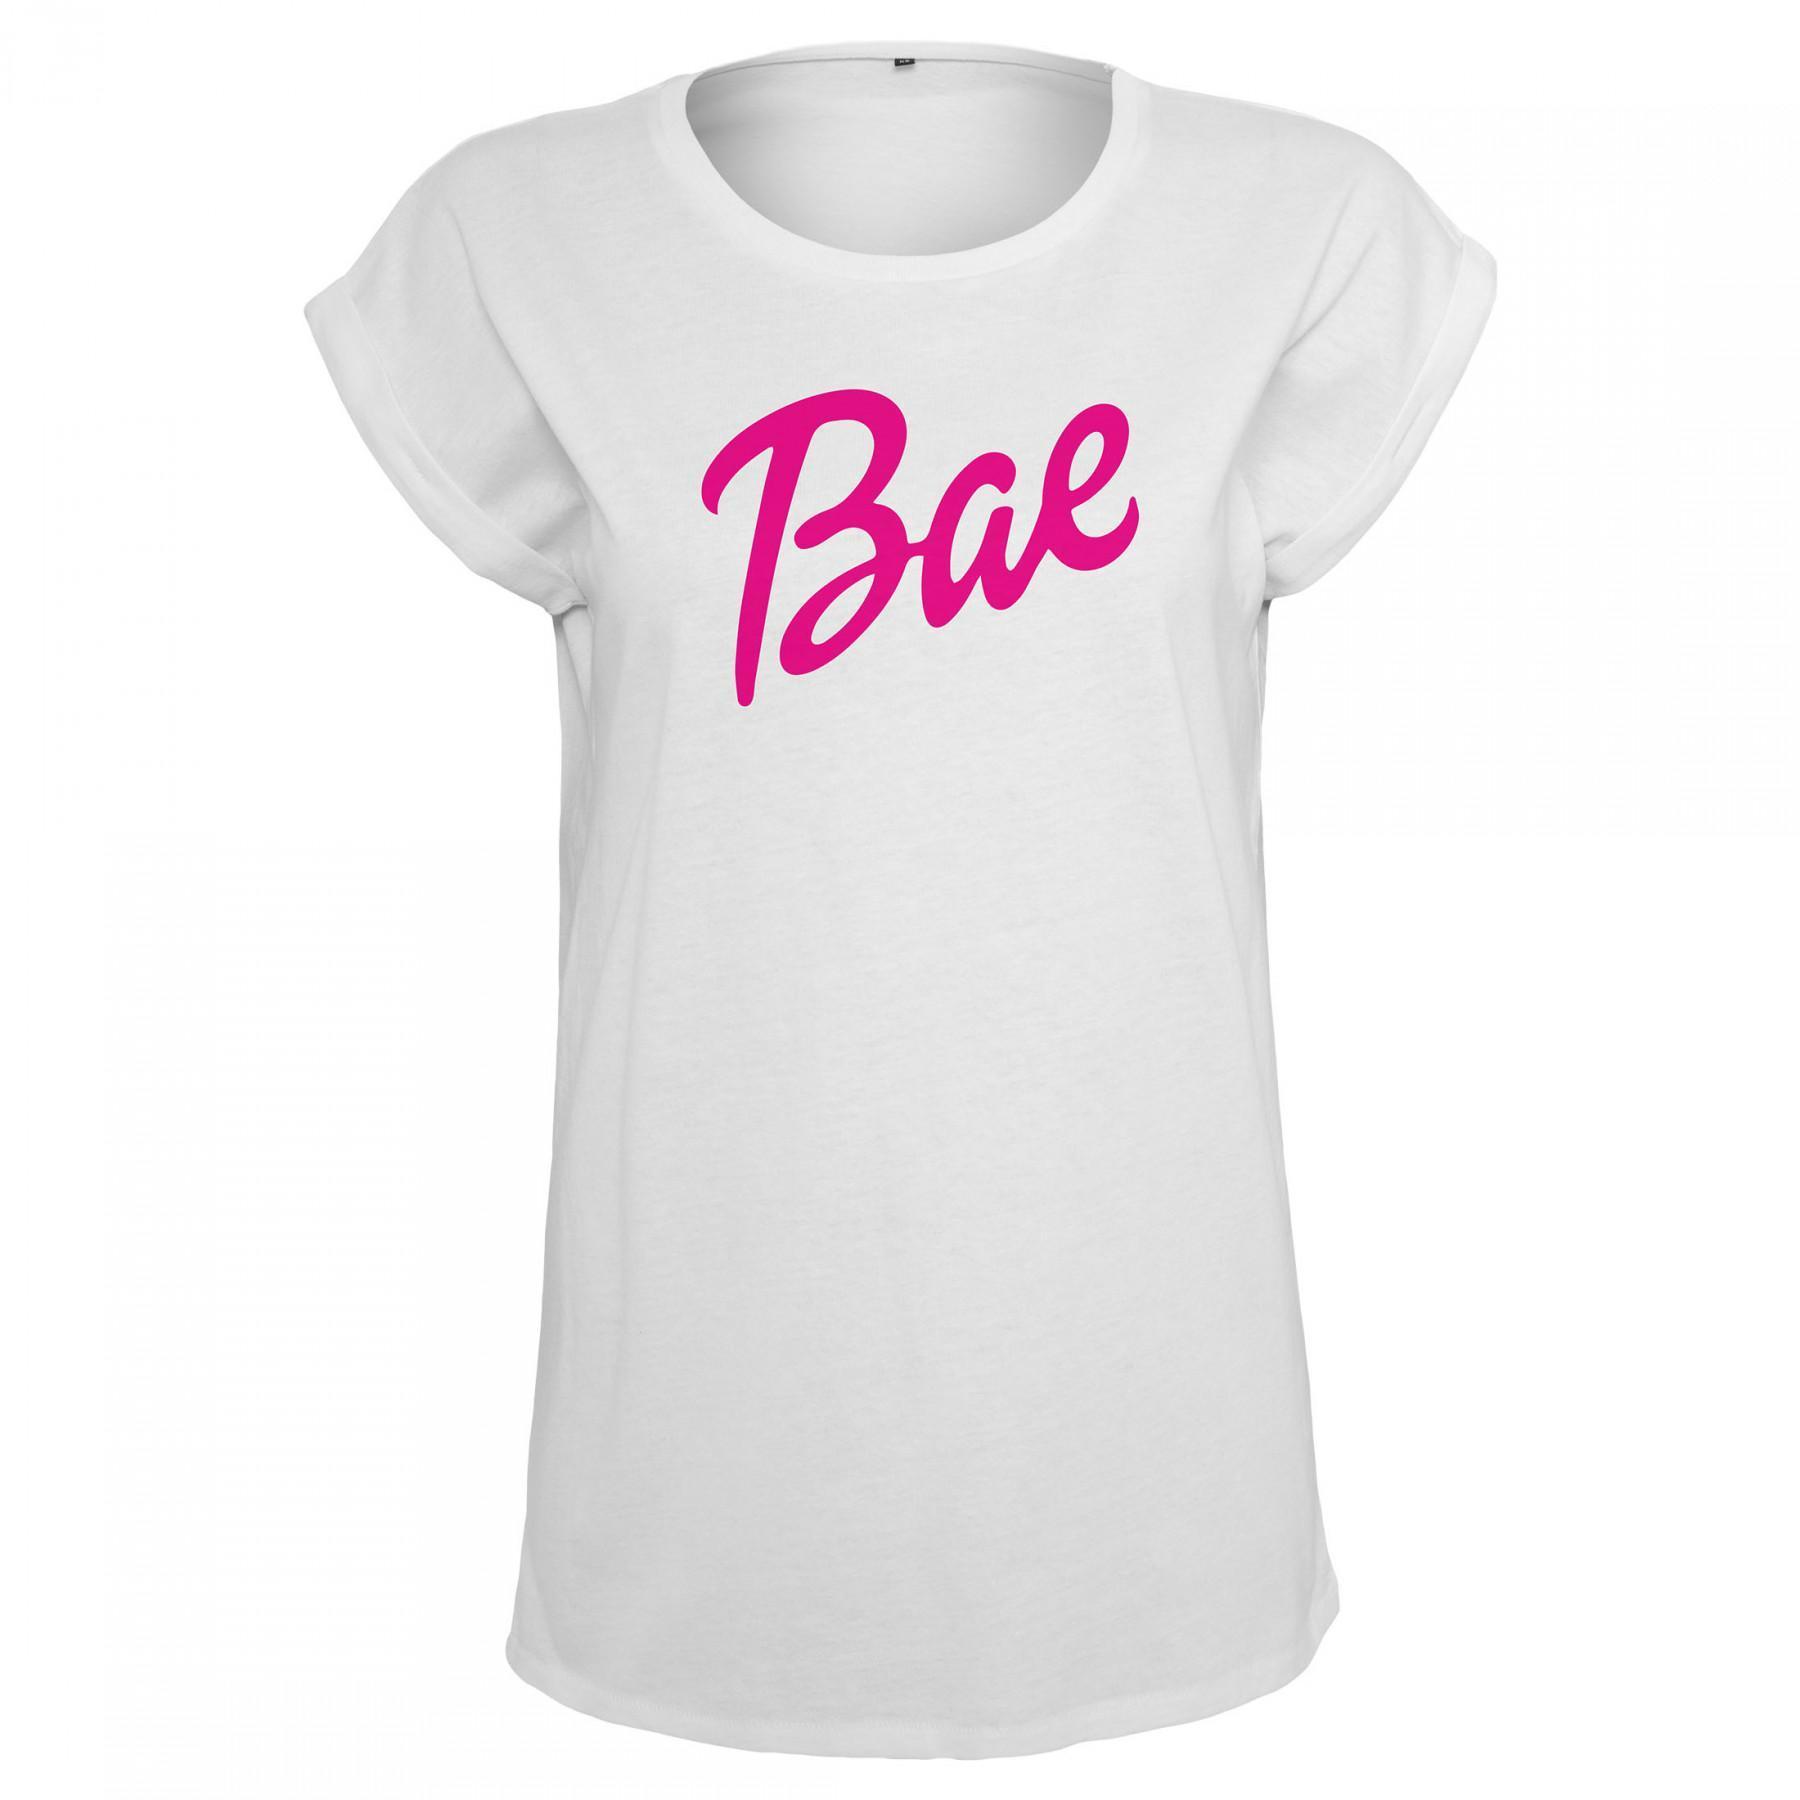 Women's T-shirt Mister Tee bae